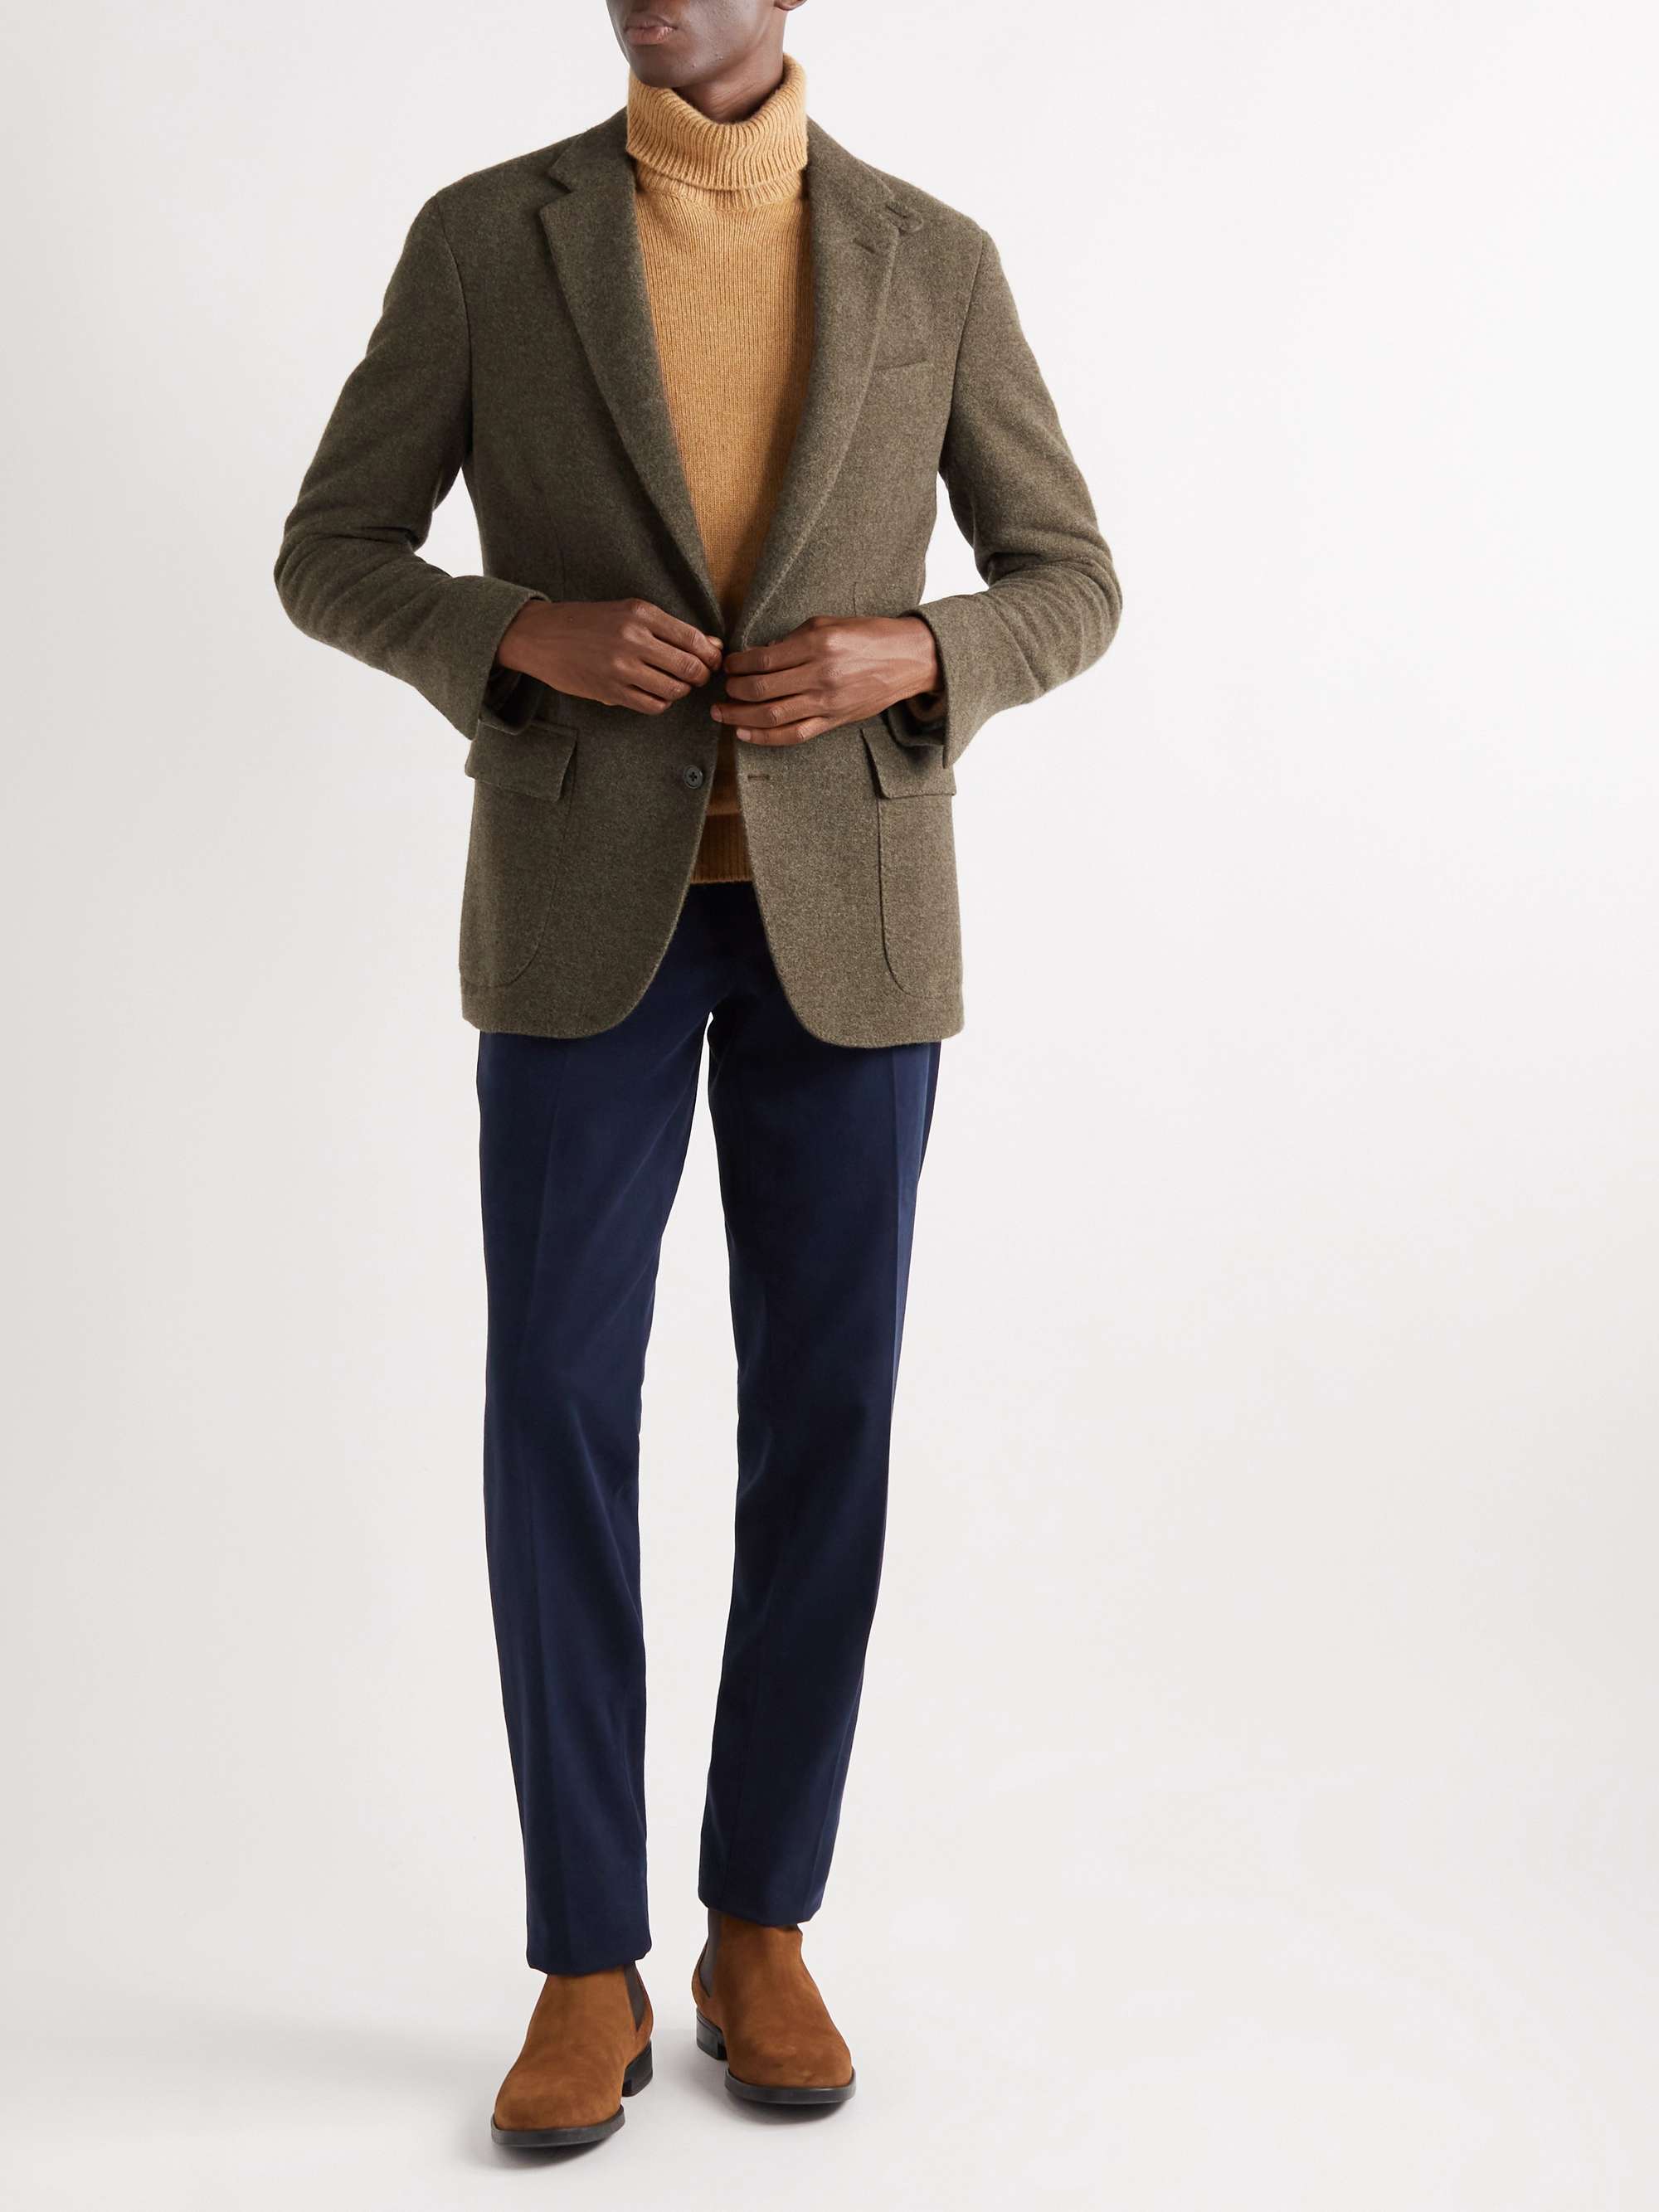 RALPH LAUREN PURPLE LABEL Loden Cashmere and Wool-Blend Felt Suit Jacket | MR  PORTER